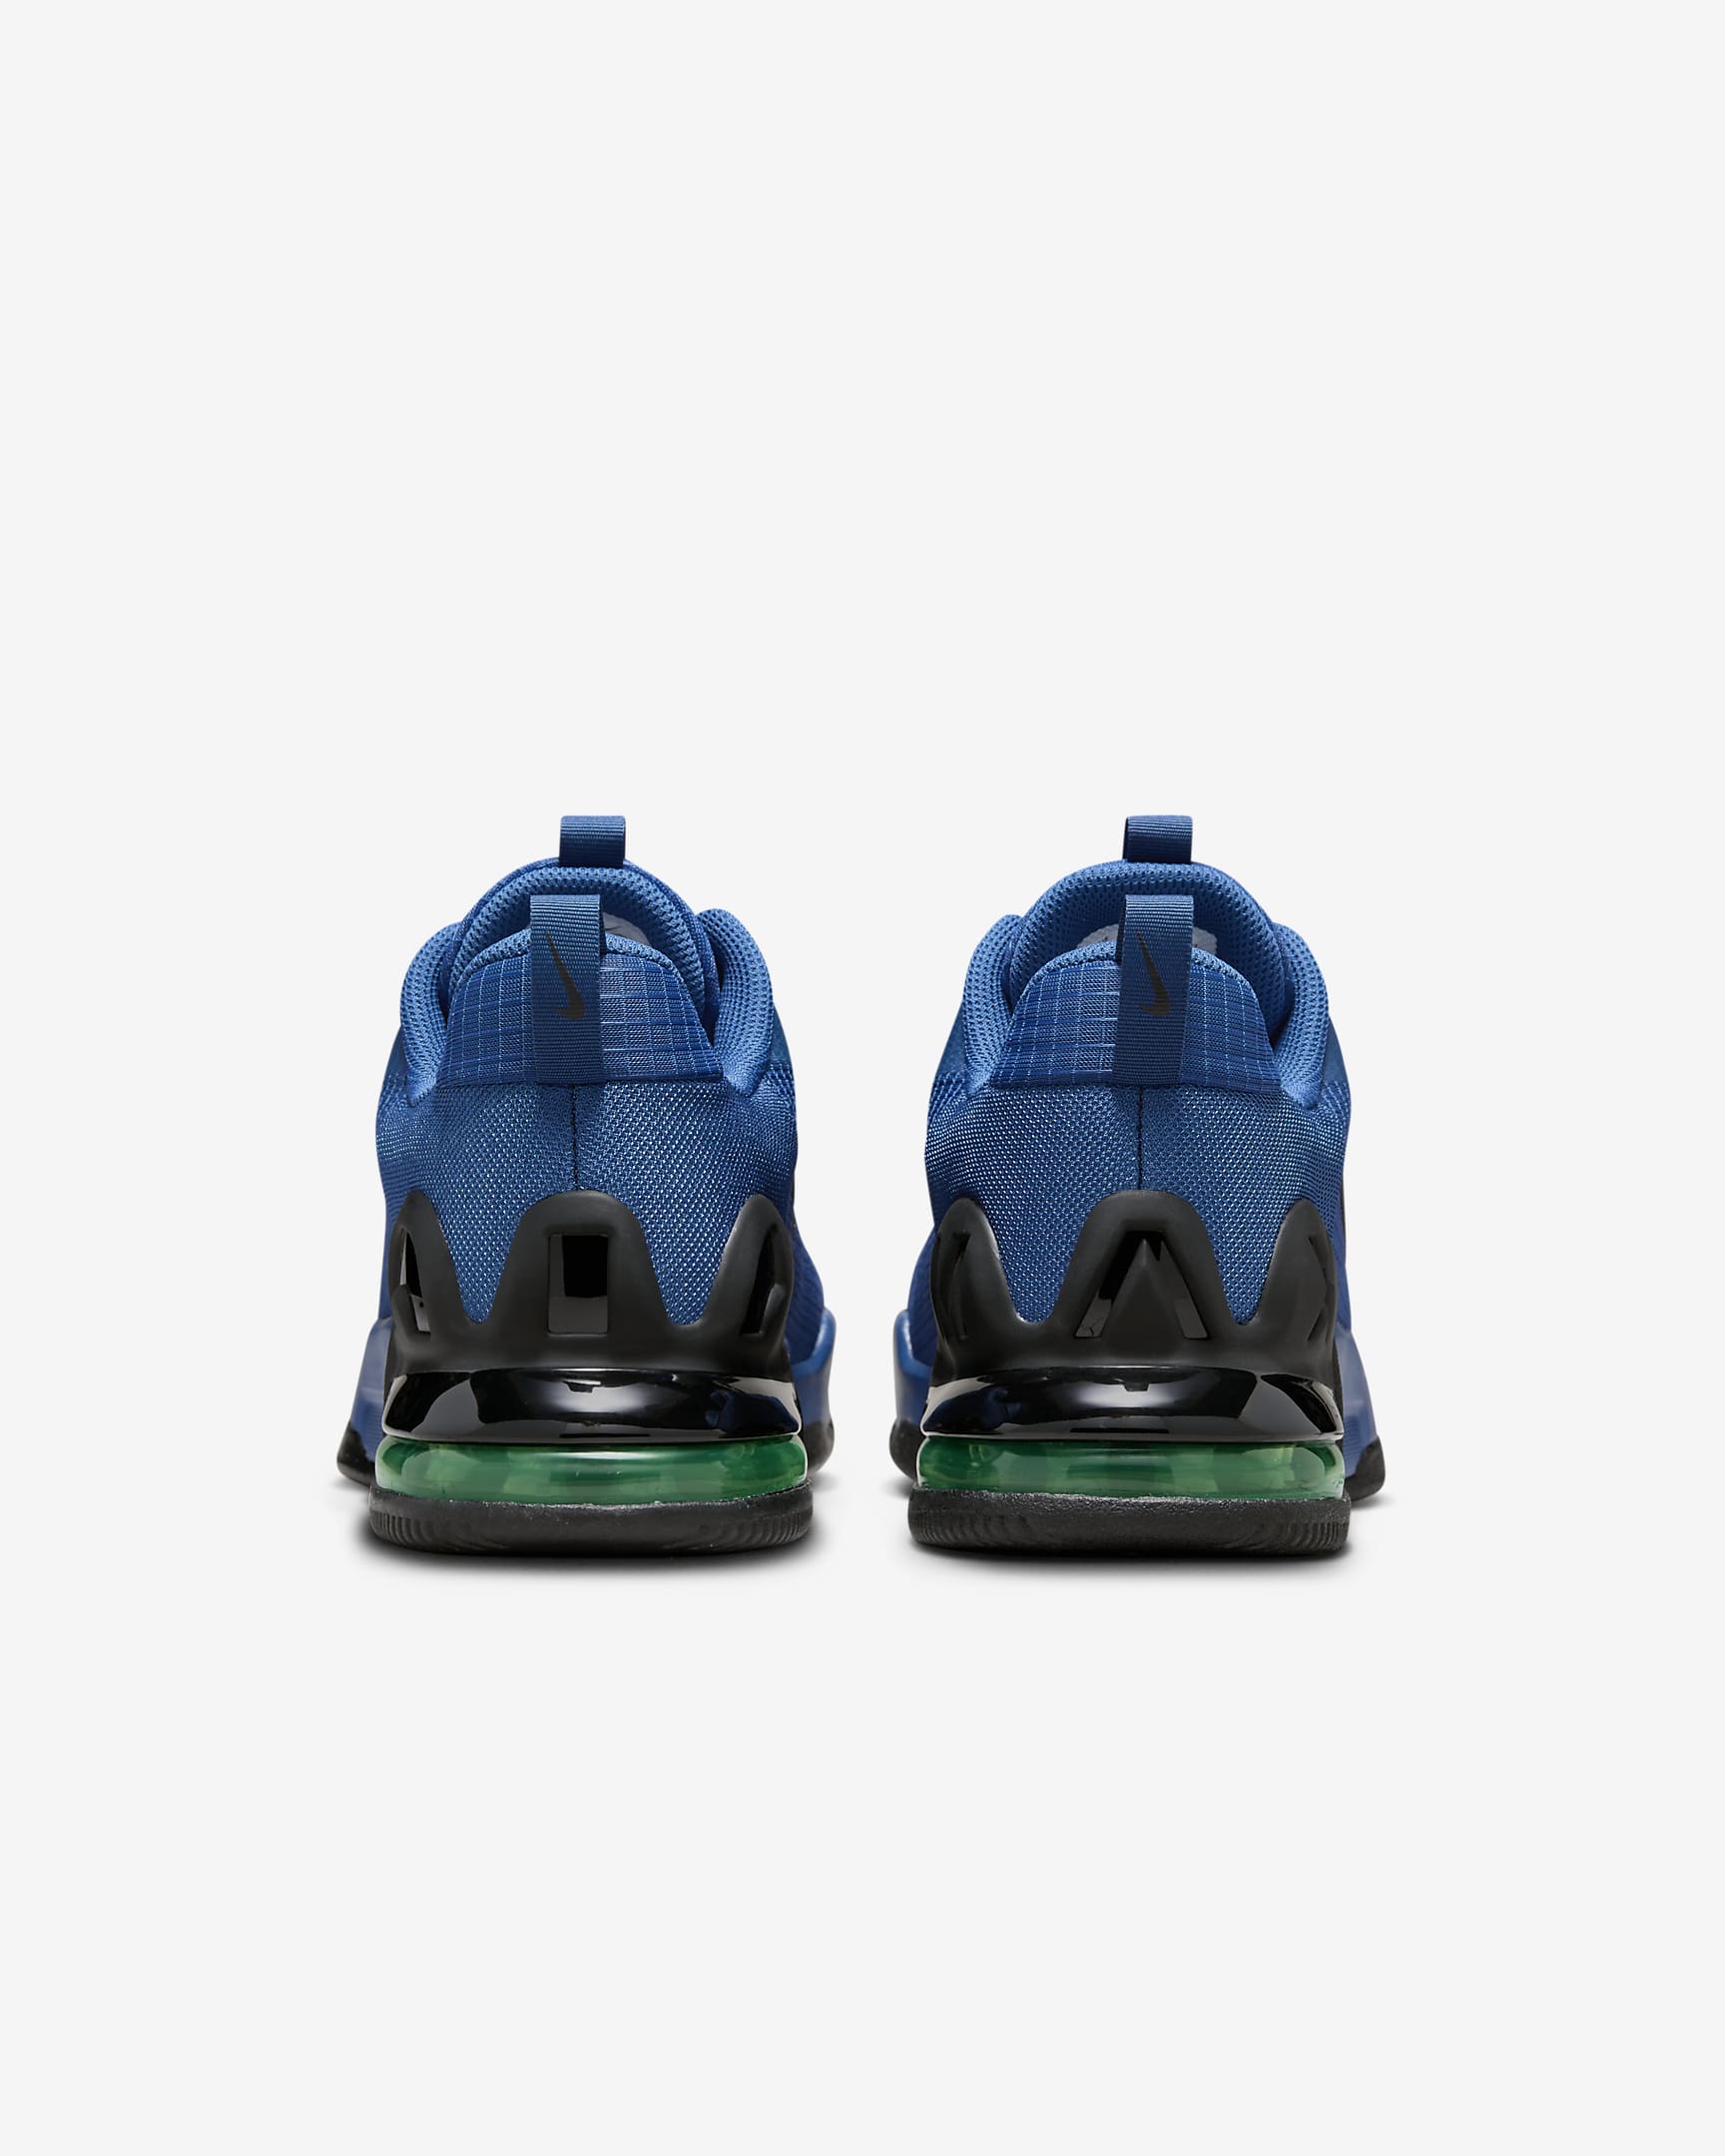 Chaussure d'entraînement Nike Air Max Alpha Trainer 5 pour homme - Court Blue/Green Strike/Noir